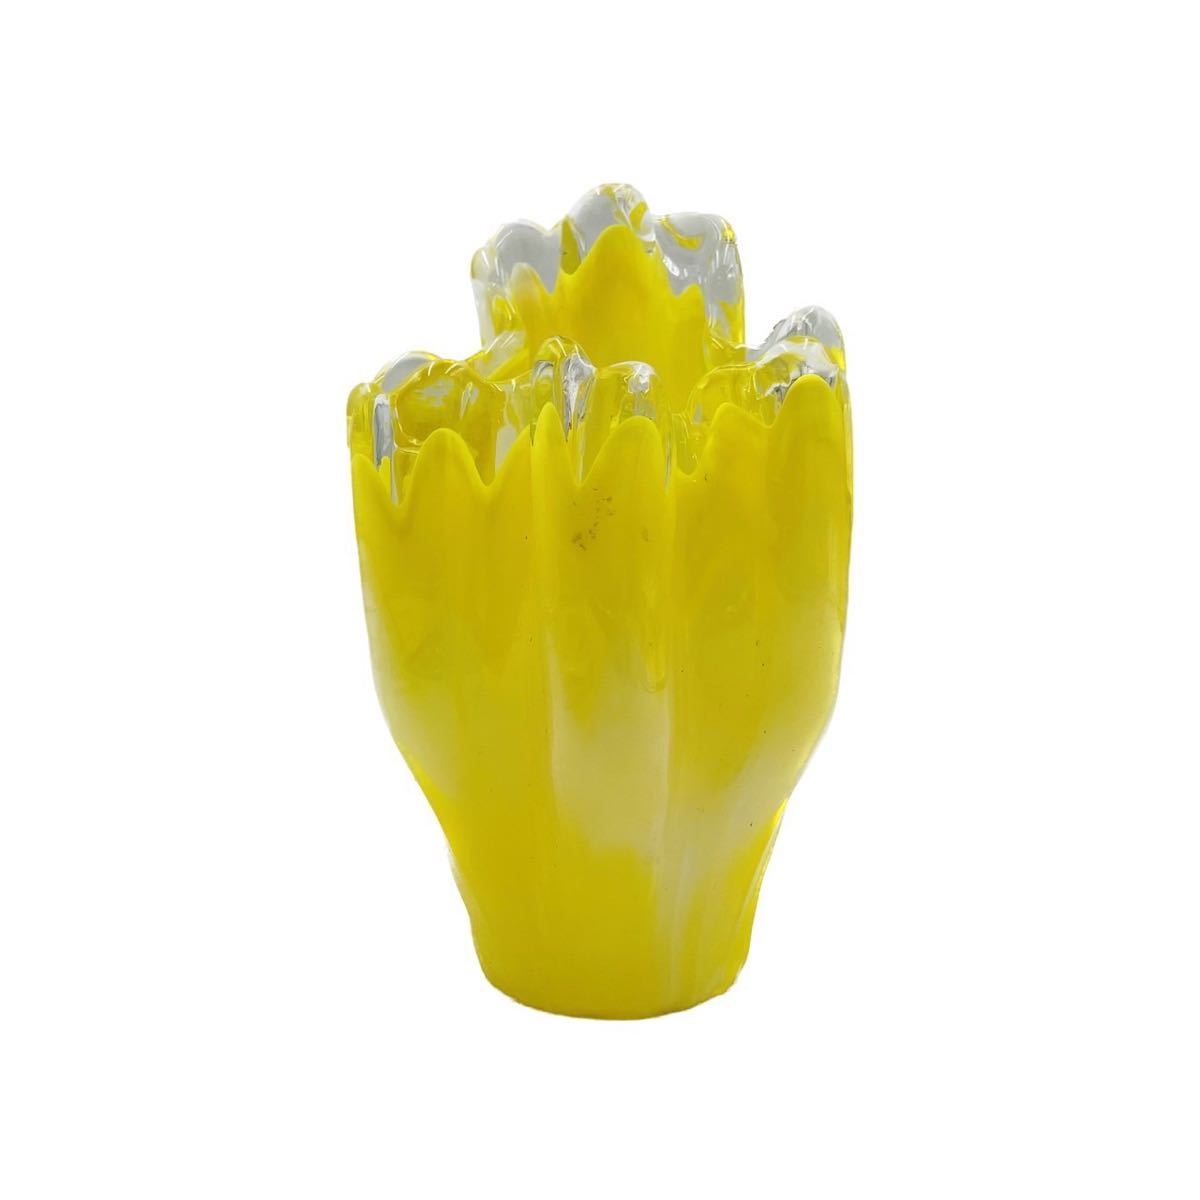 ★ クラタクラフトグラス KURATA 花瓶 黄色 変わり花瓶 変形花瓶 高さ20cm 幅13cm 花入 花器_画像2